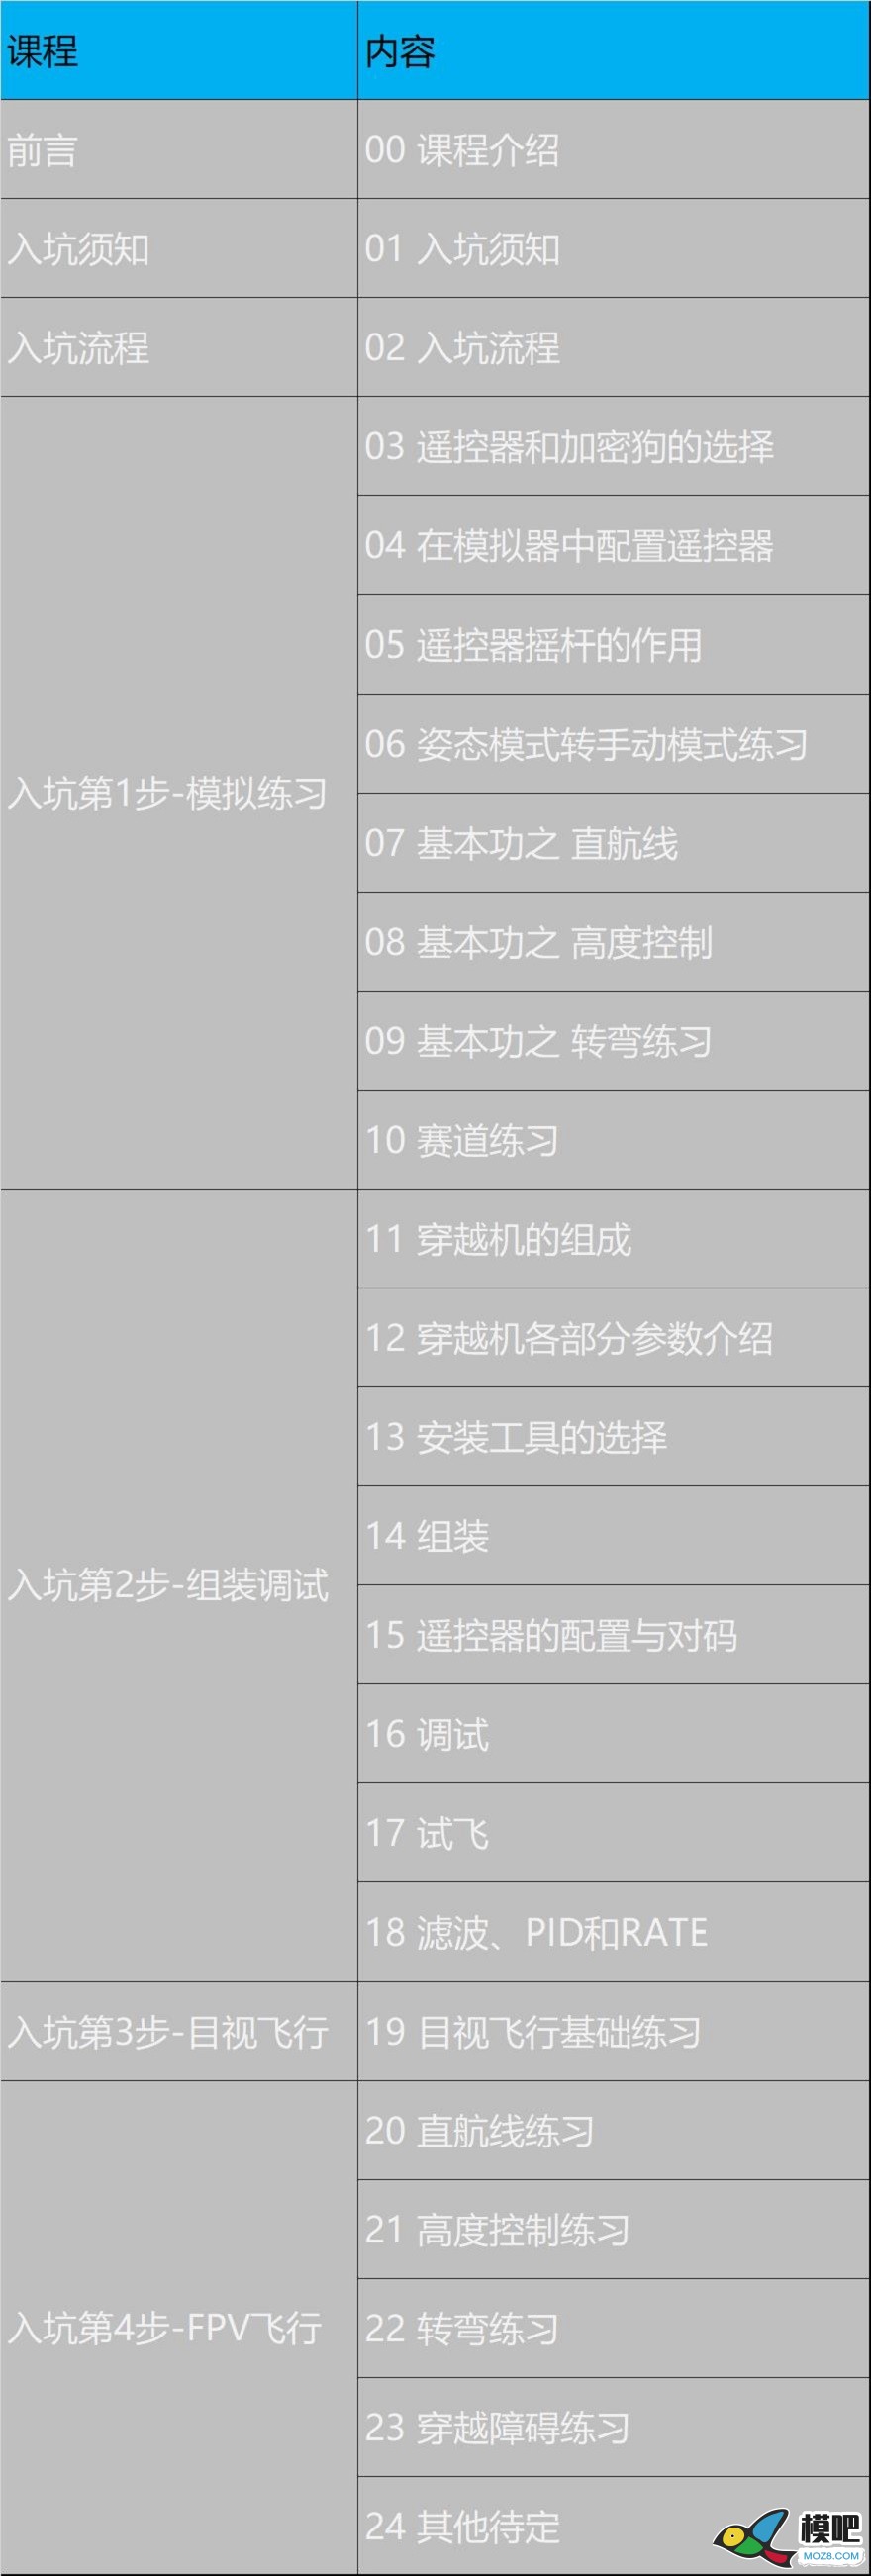 《穿越机入坑指南》已更新至3.11 穿越机的可选配件 穿越机,电池,天线,电调,电机 作者:yangjinduo 3649 